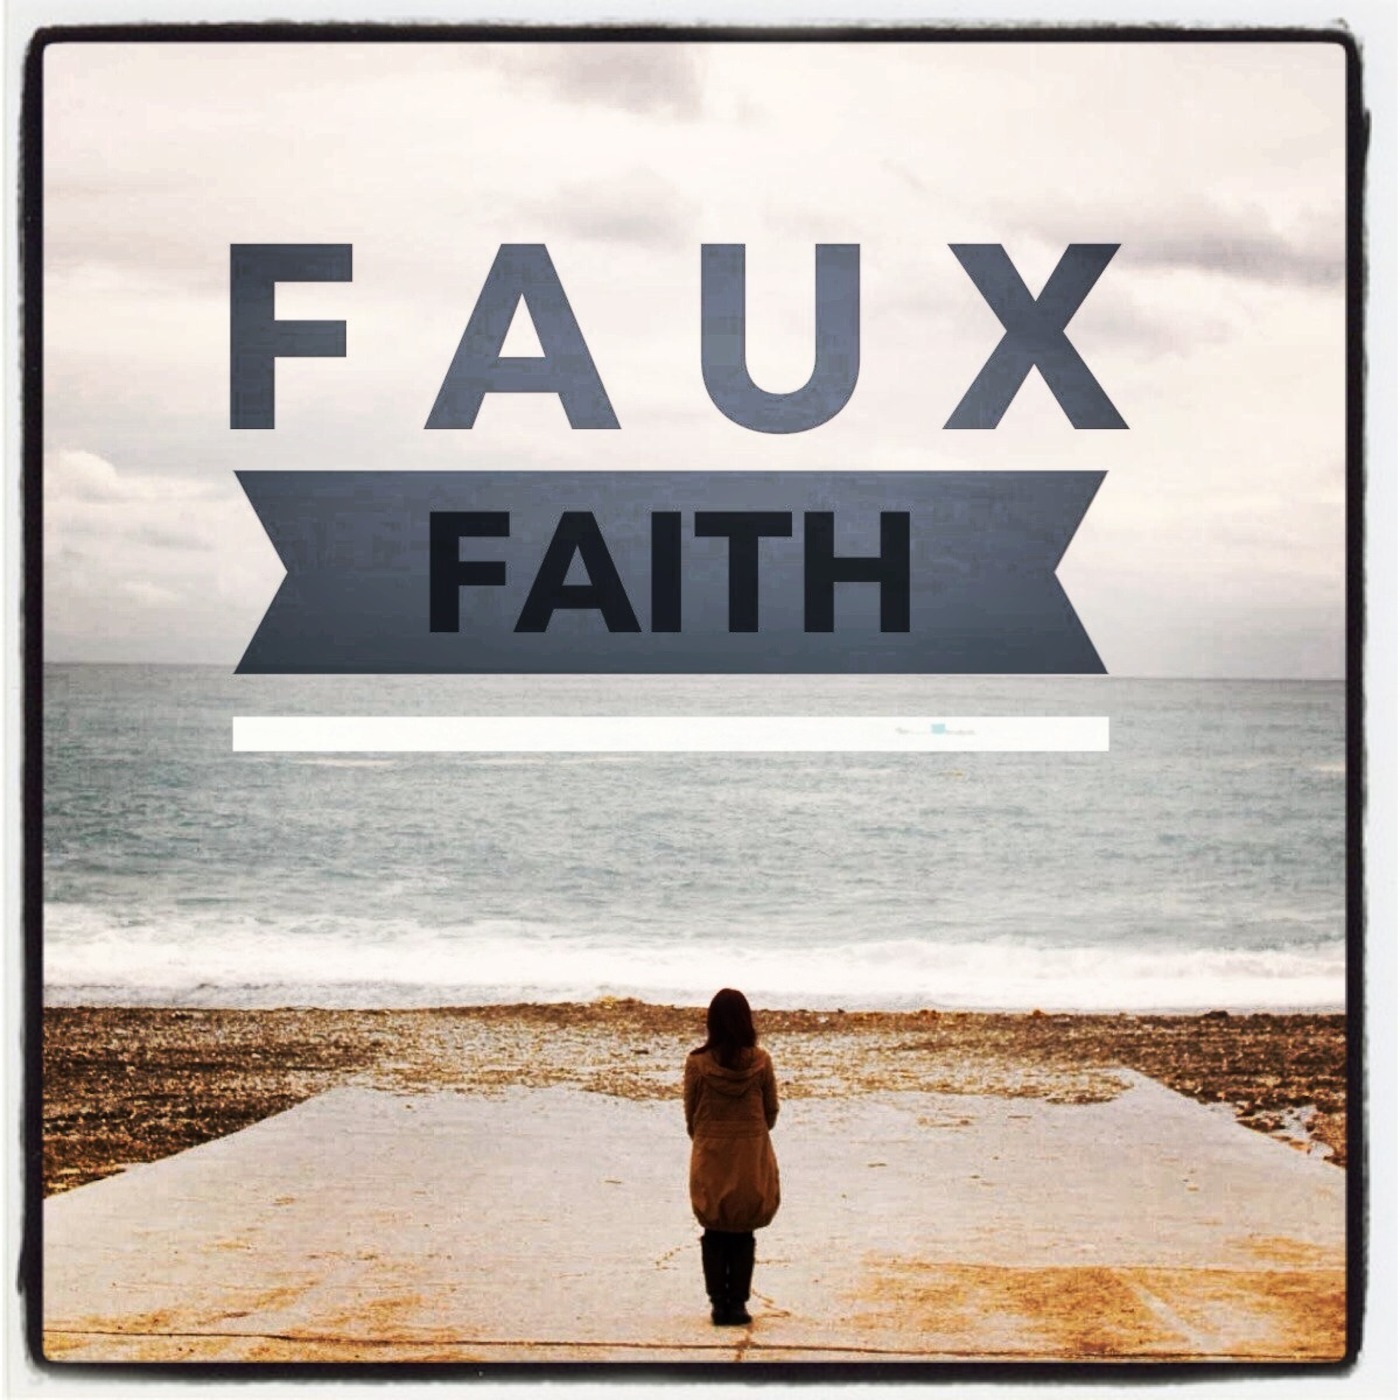 Faux Faith: One Thing